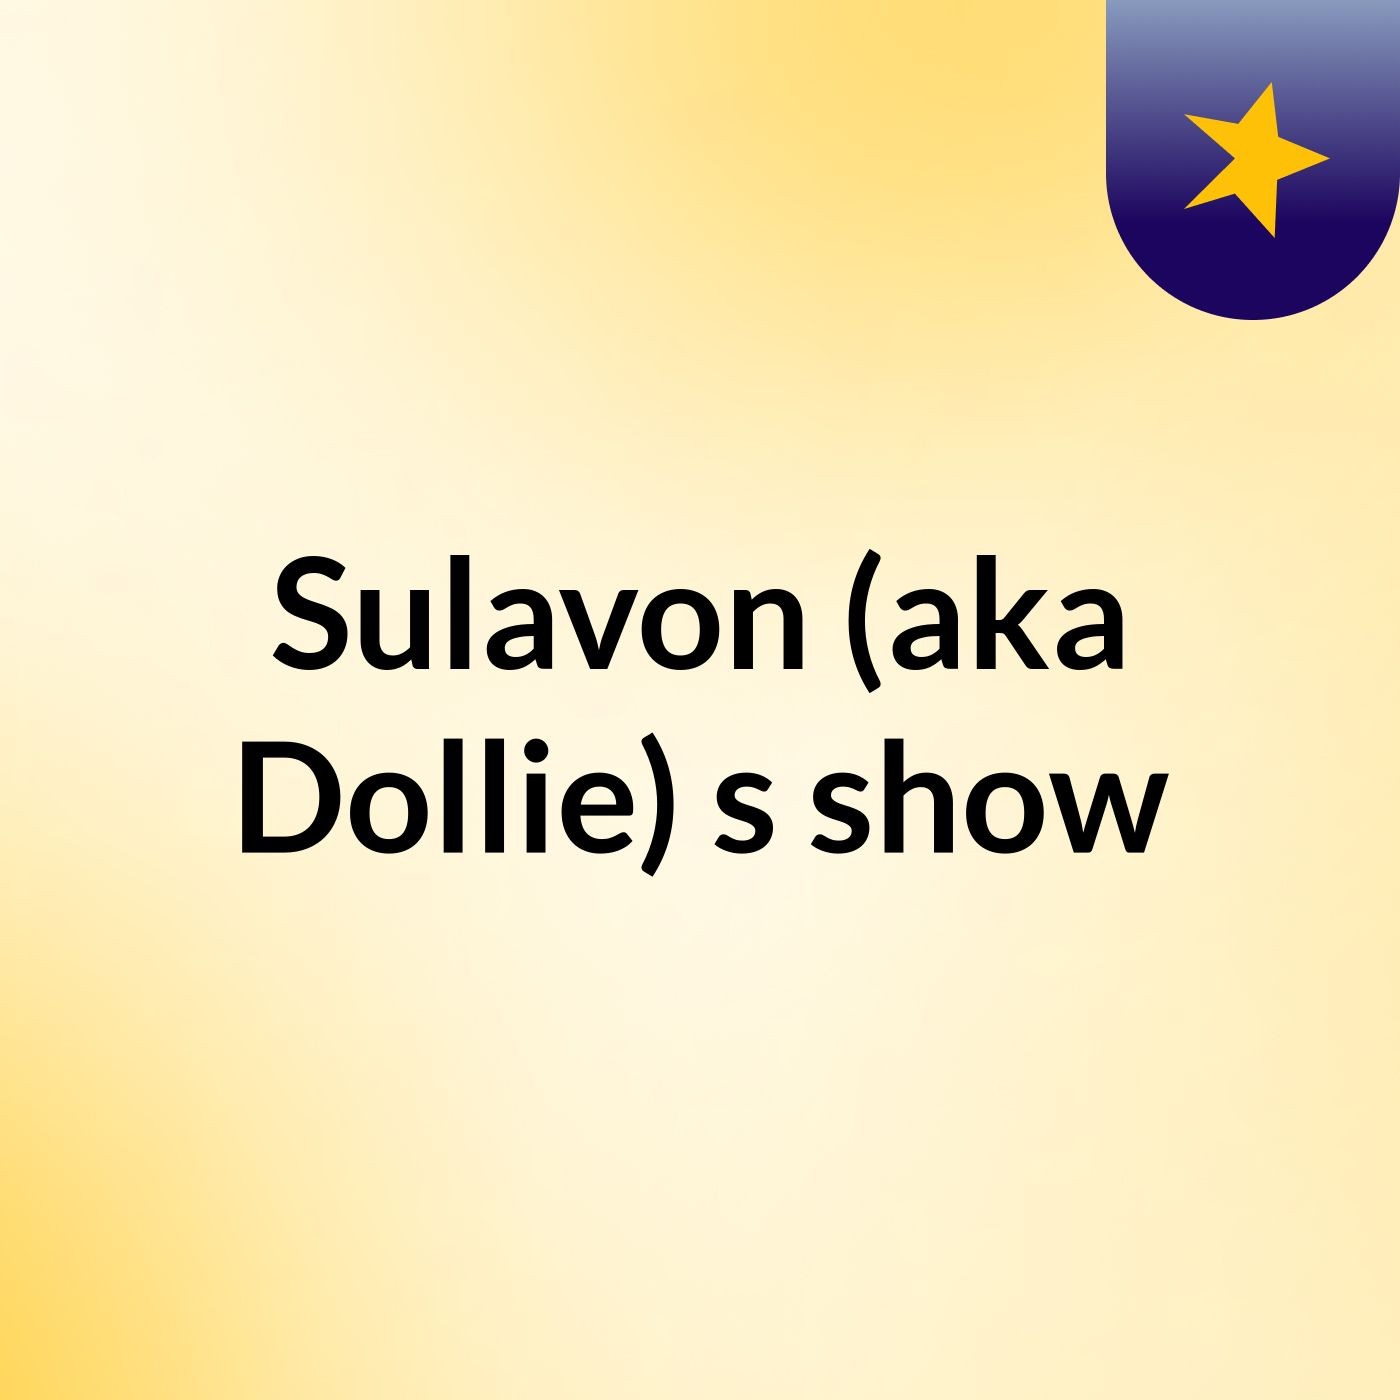 Sulavon (aka Dollie)'s show